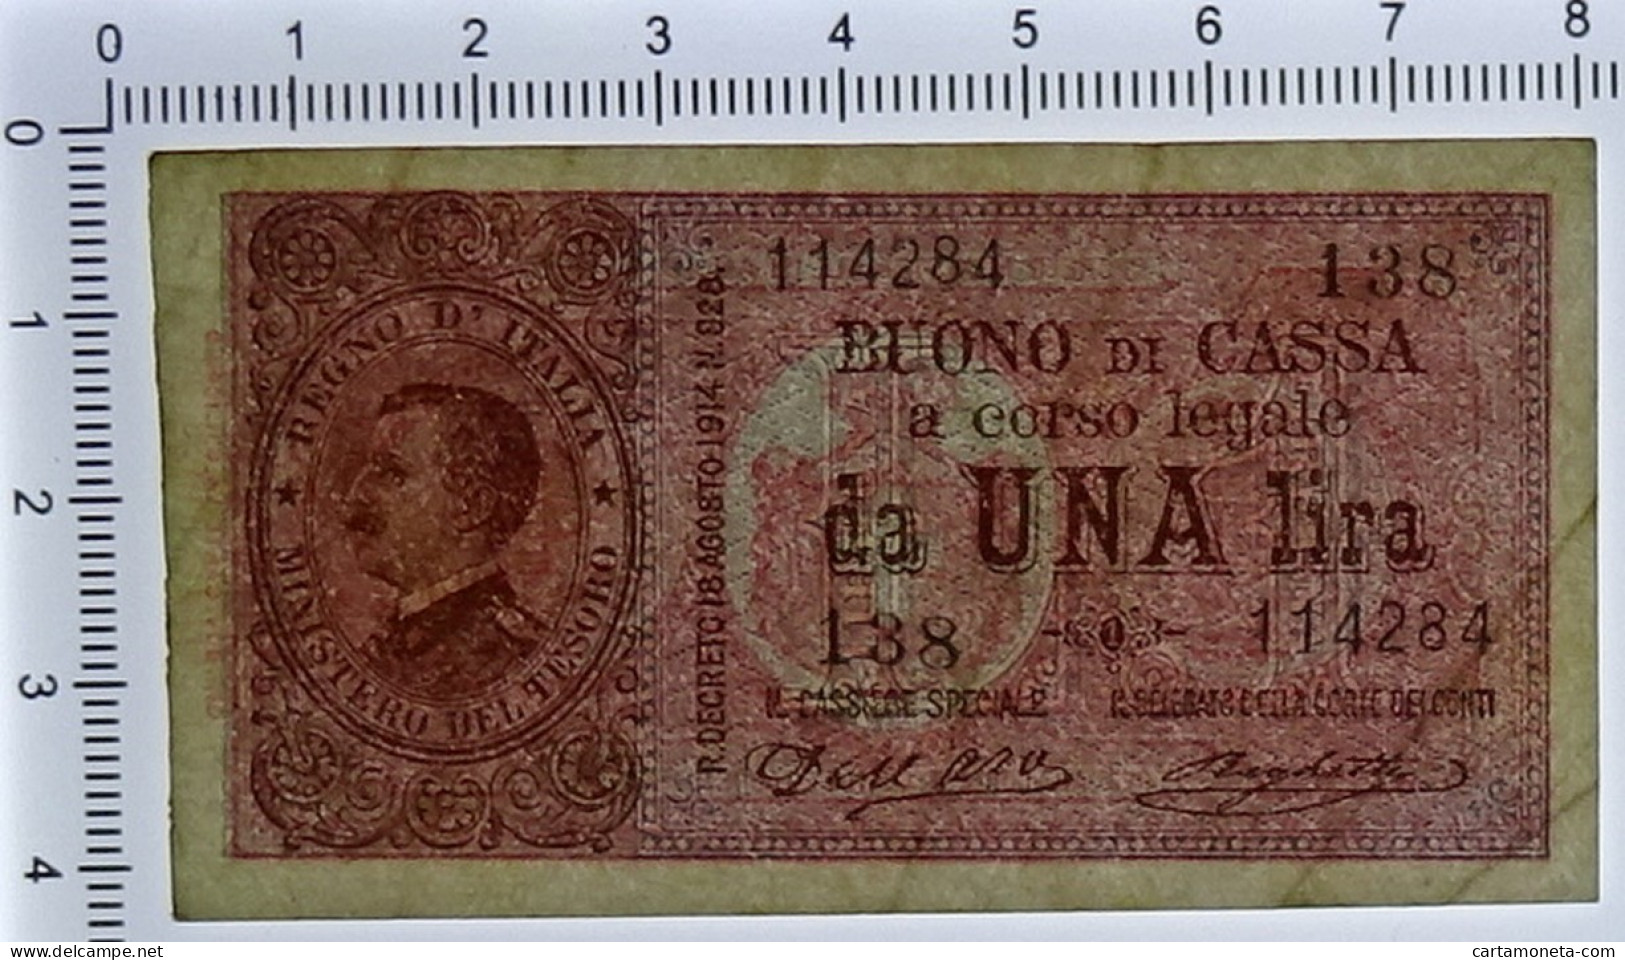 1 LIRA BUONO DI CASSA EFFIGE VITTORIO EMANUELE III 02/09/1914 QSPL - Regno D'Italia – Other